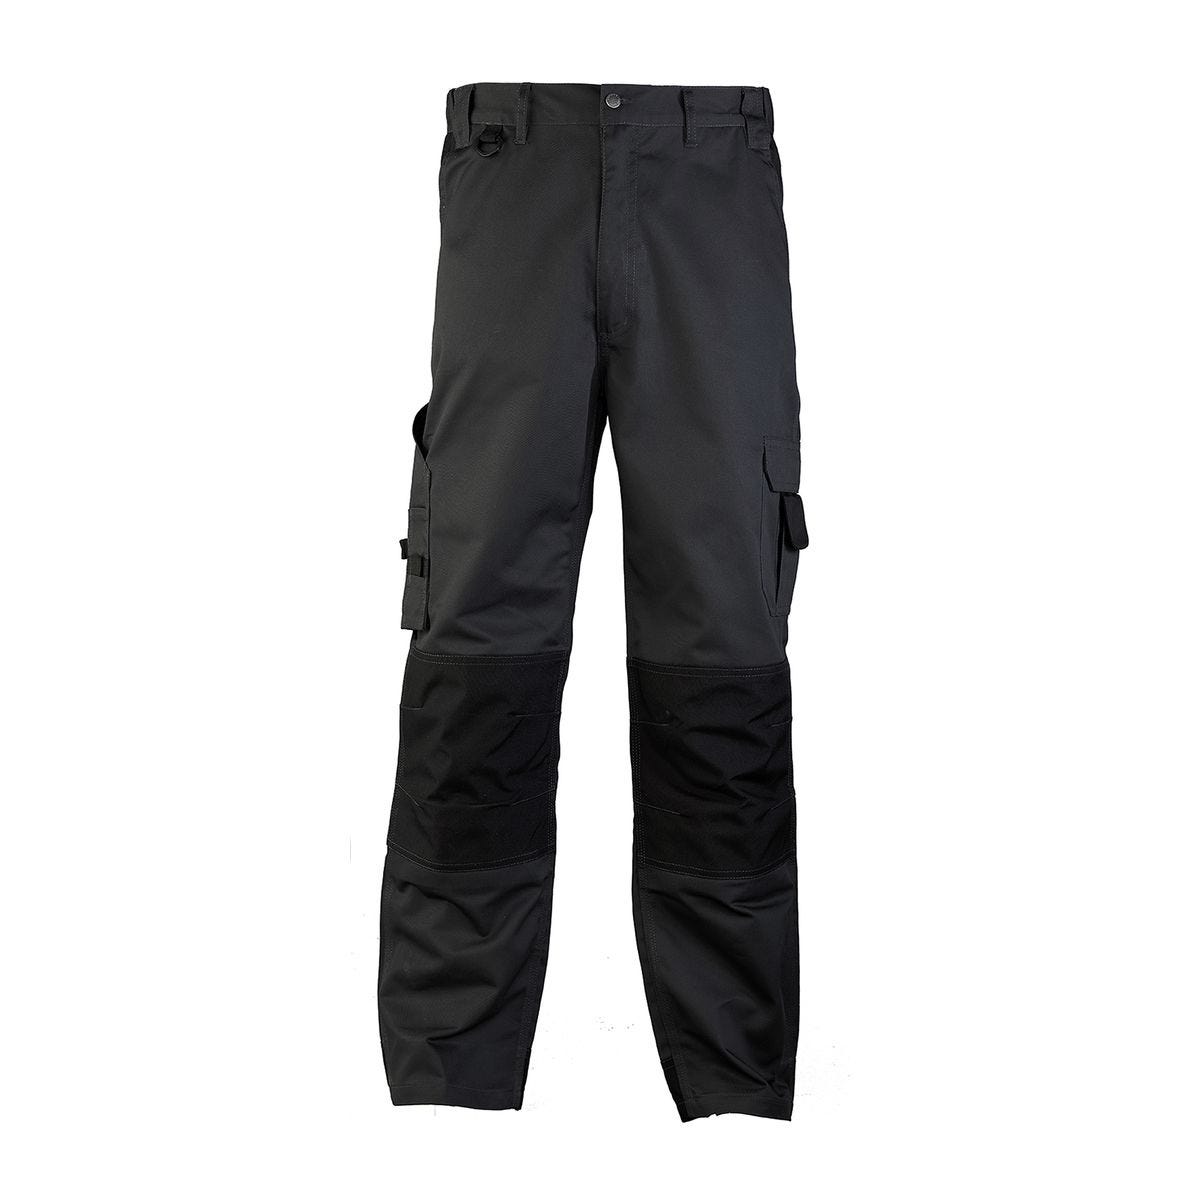 Pantalon CLASS gris foncé - COVERGUARD - Taille XS 0